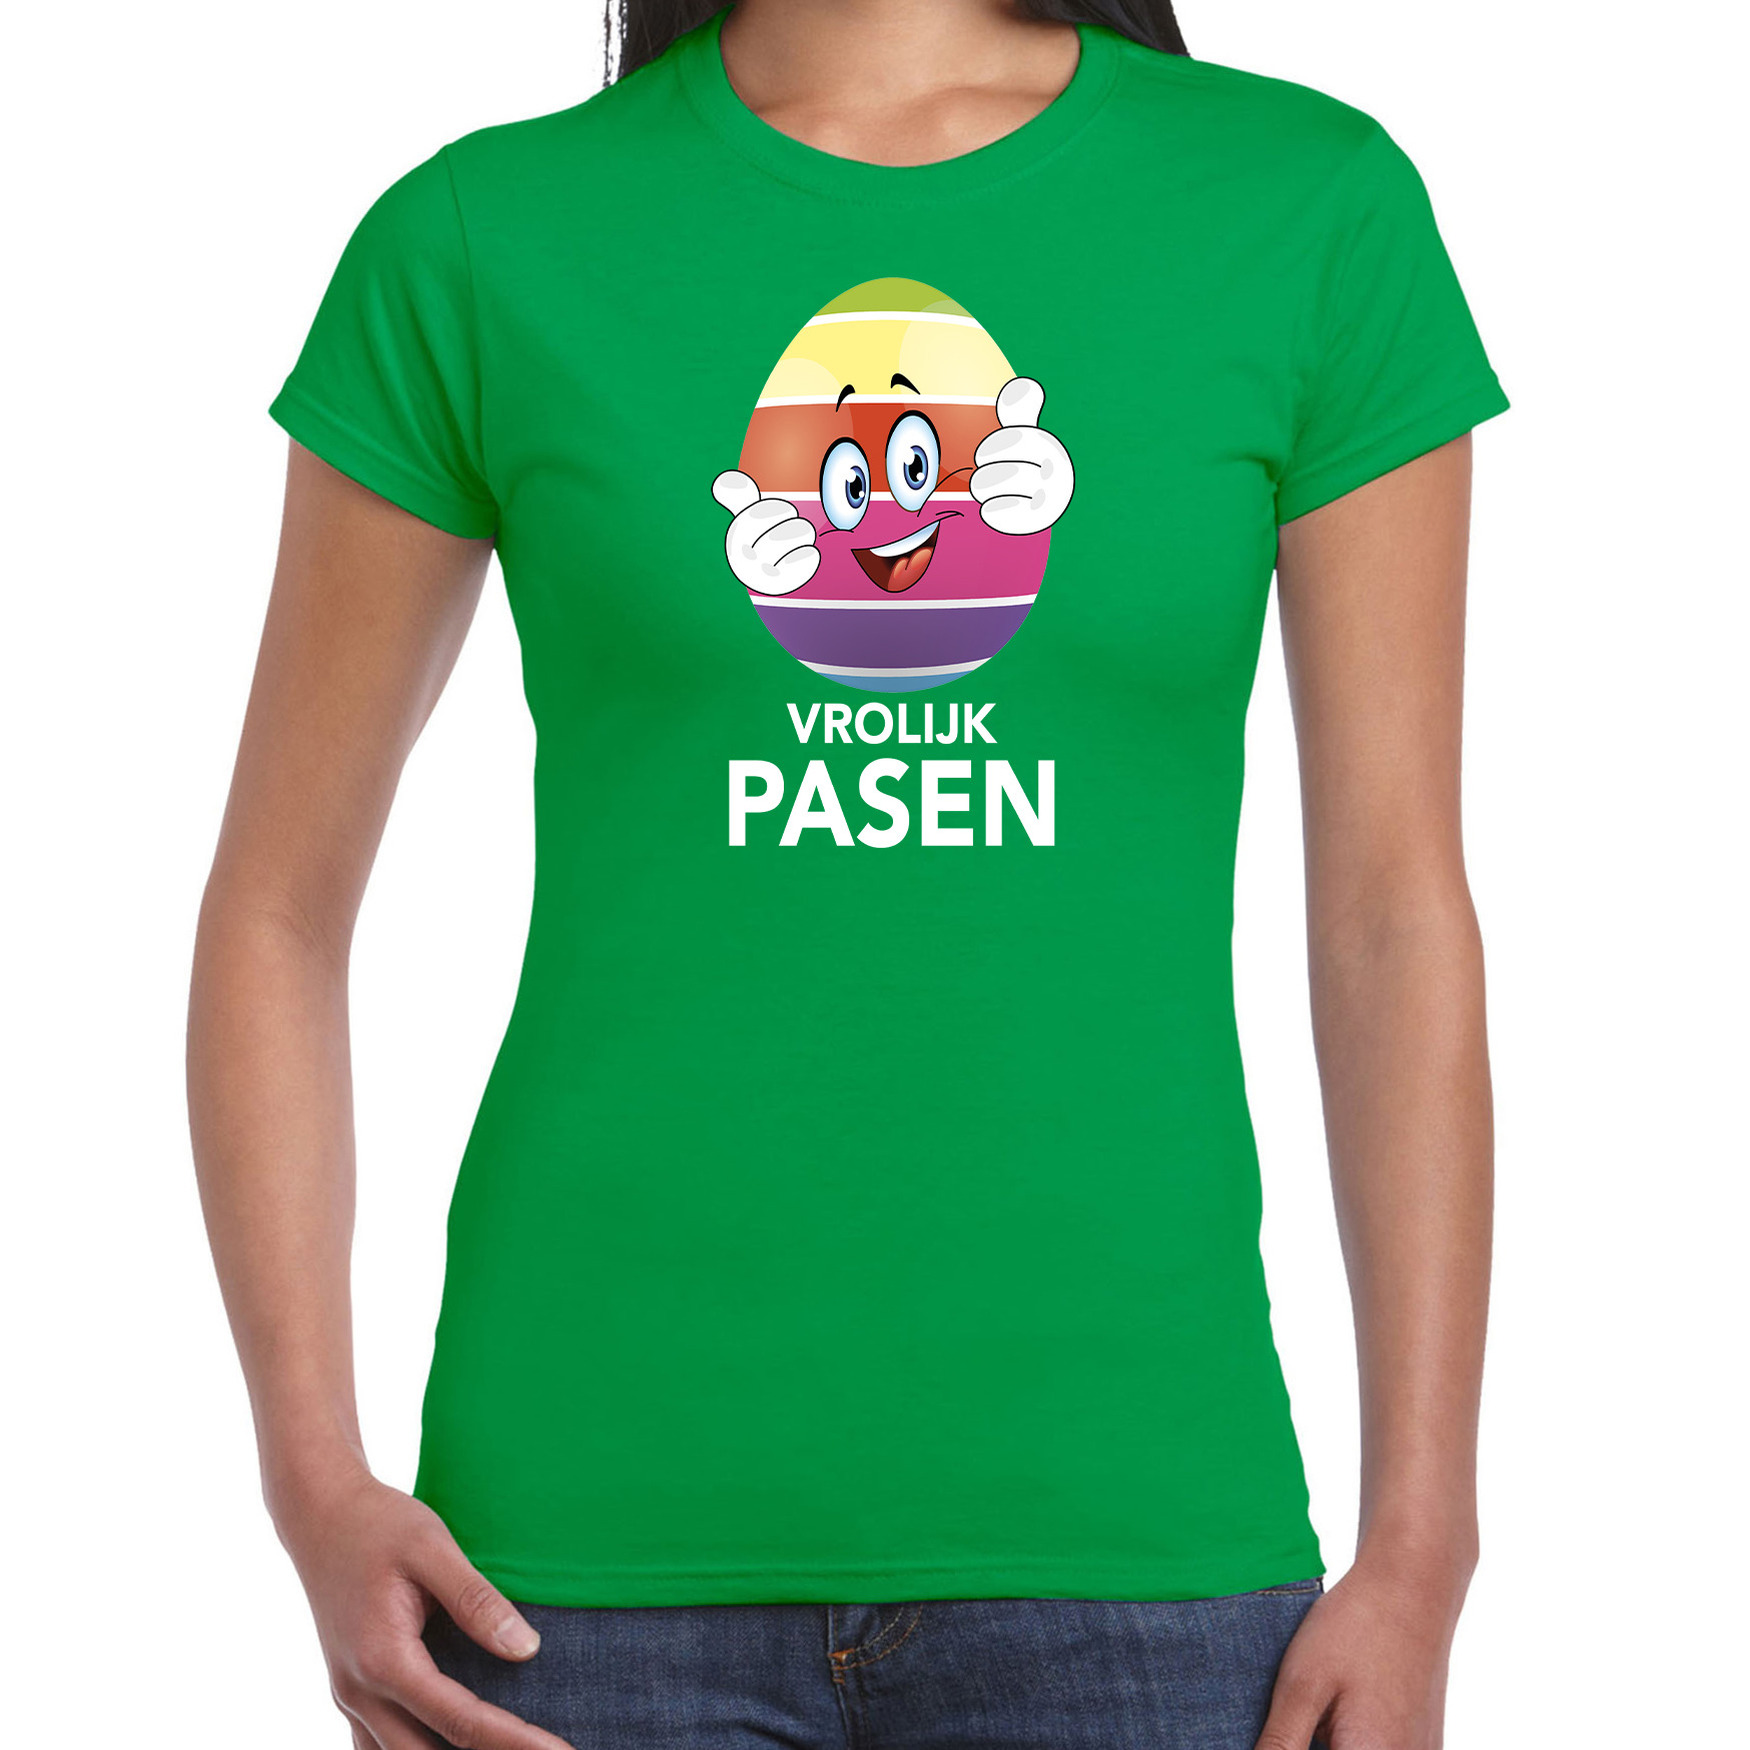 Paasei met duimen schuin omhoog vrolijk Pasen t-shirt groen voor dames Paas kleding-outfit